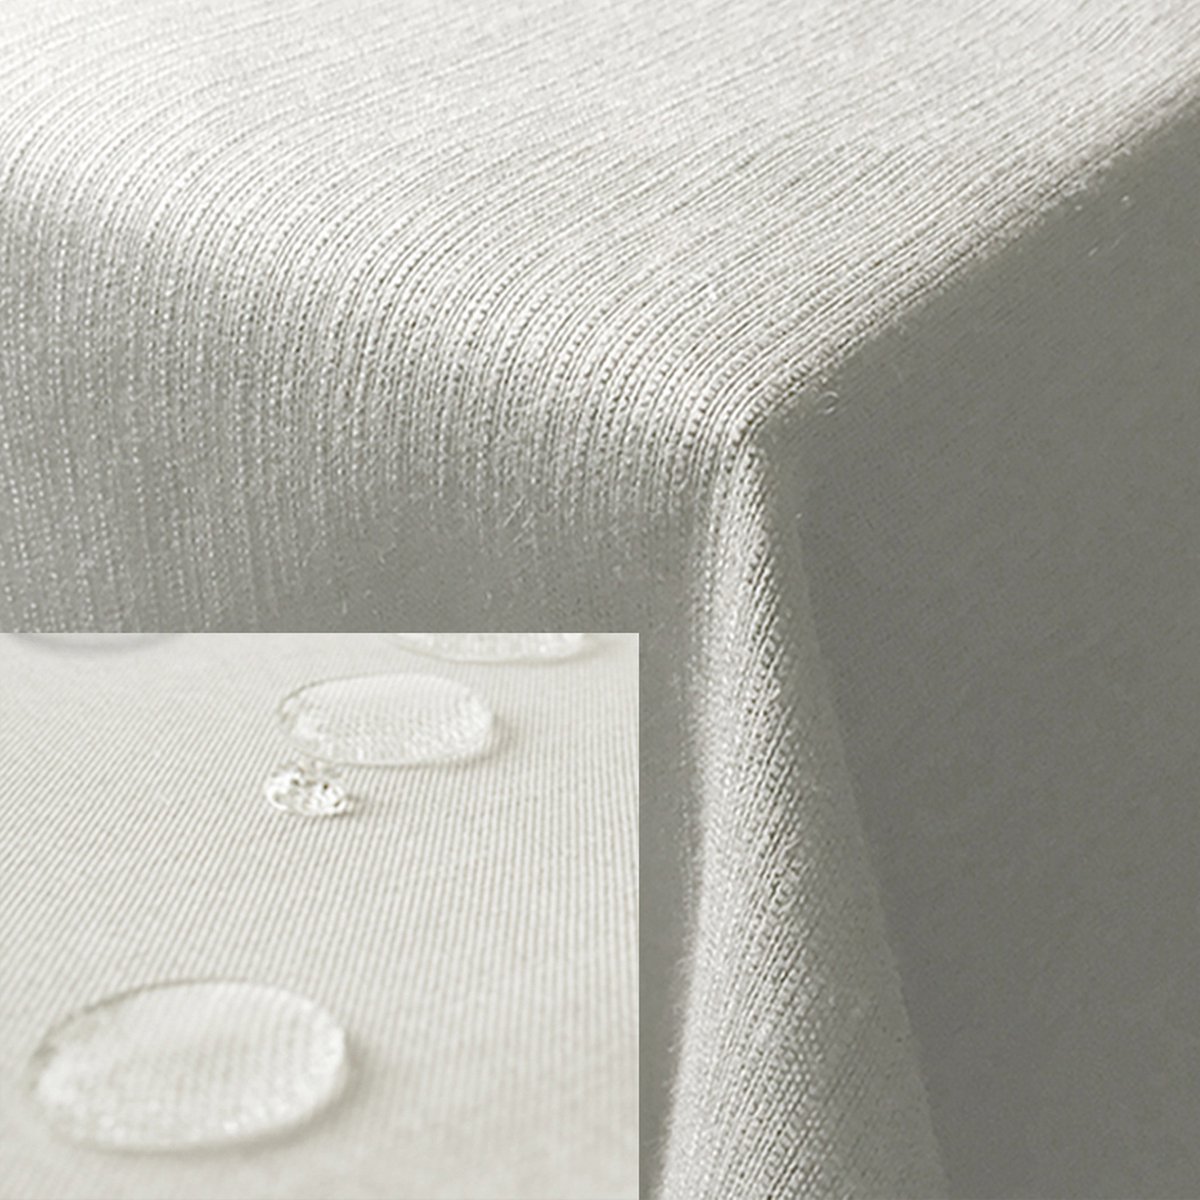 JEMIDI tafelkleed buiten 135 x 200 cm - Tafellaken afwasbaar - Tafelzeil buiten of binnen met linnenlook - Vuil- en waterafstotend - Wit